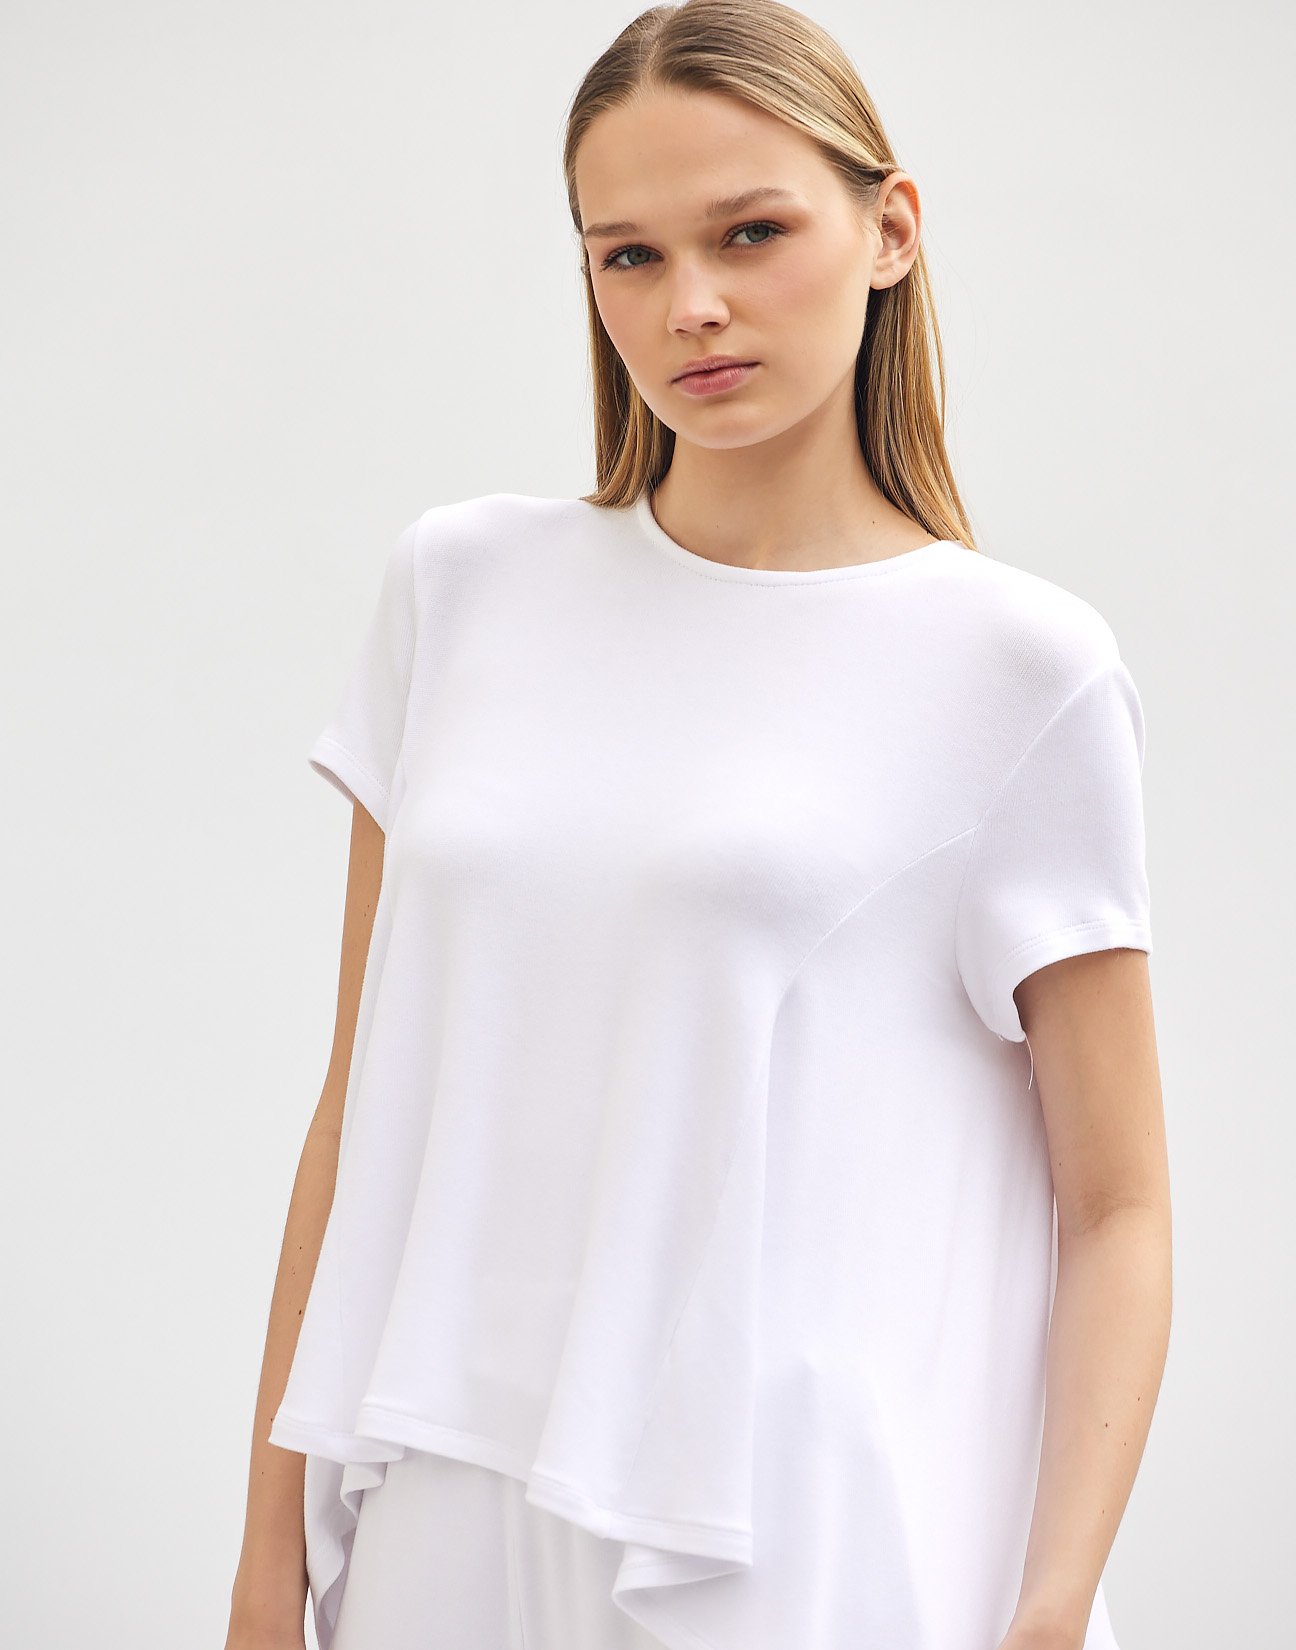 Asymmetric blouse